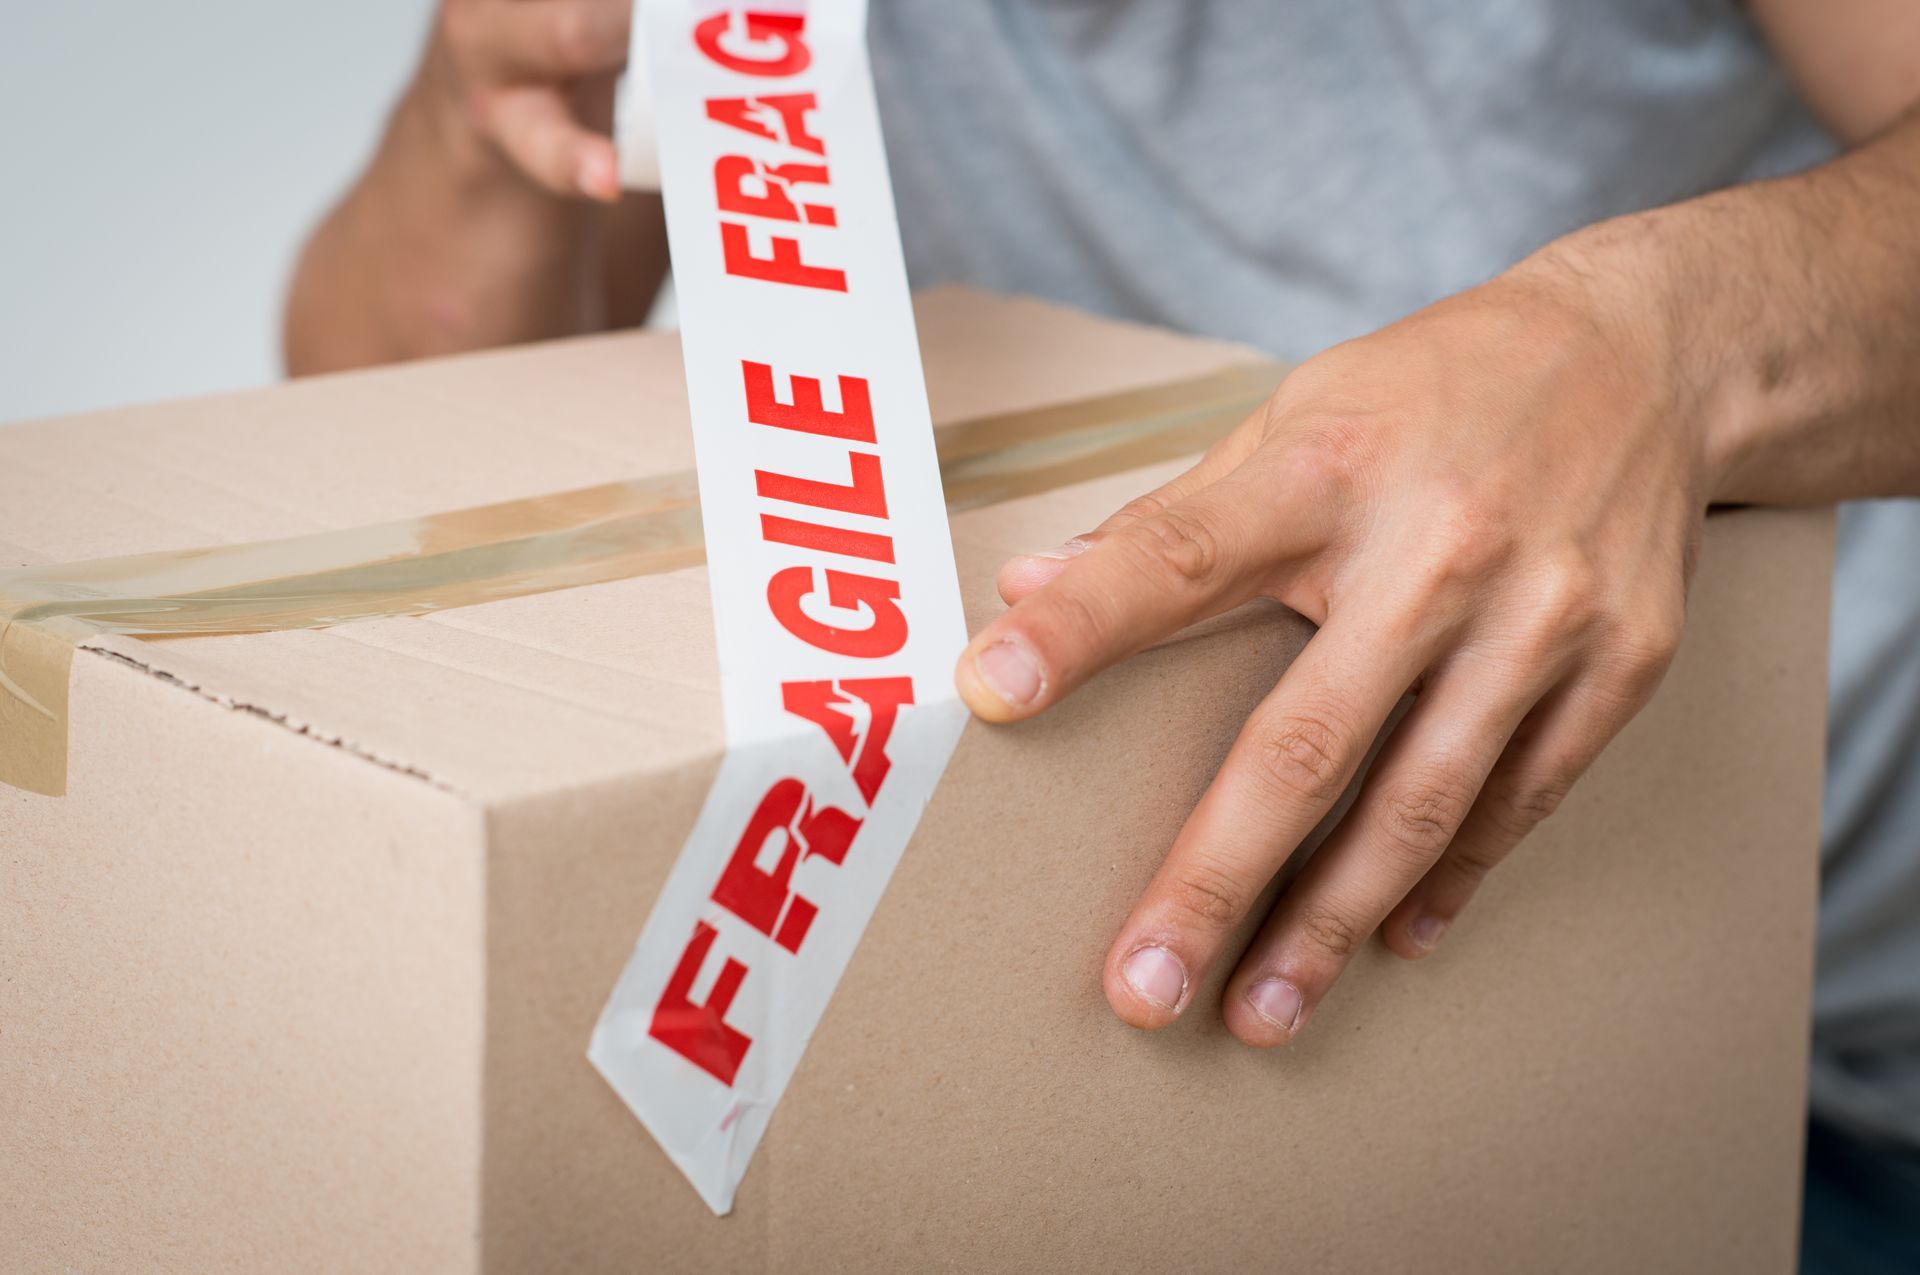 une personne met du ruban adhésif fragile sur une boîte en carton.